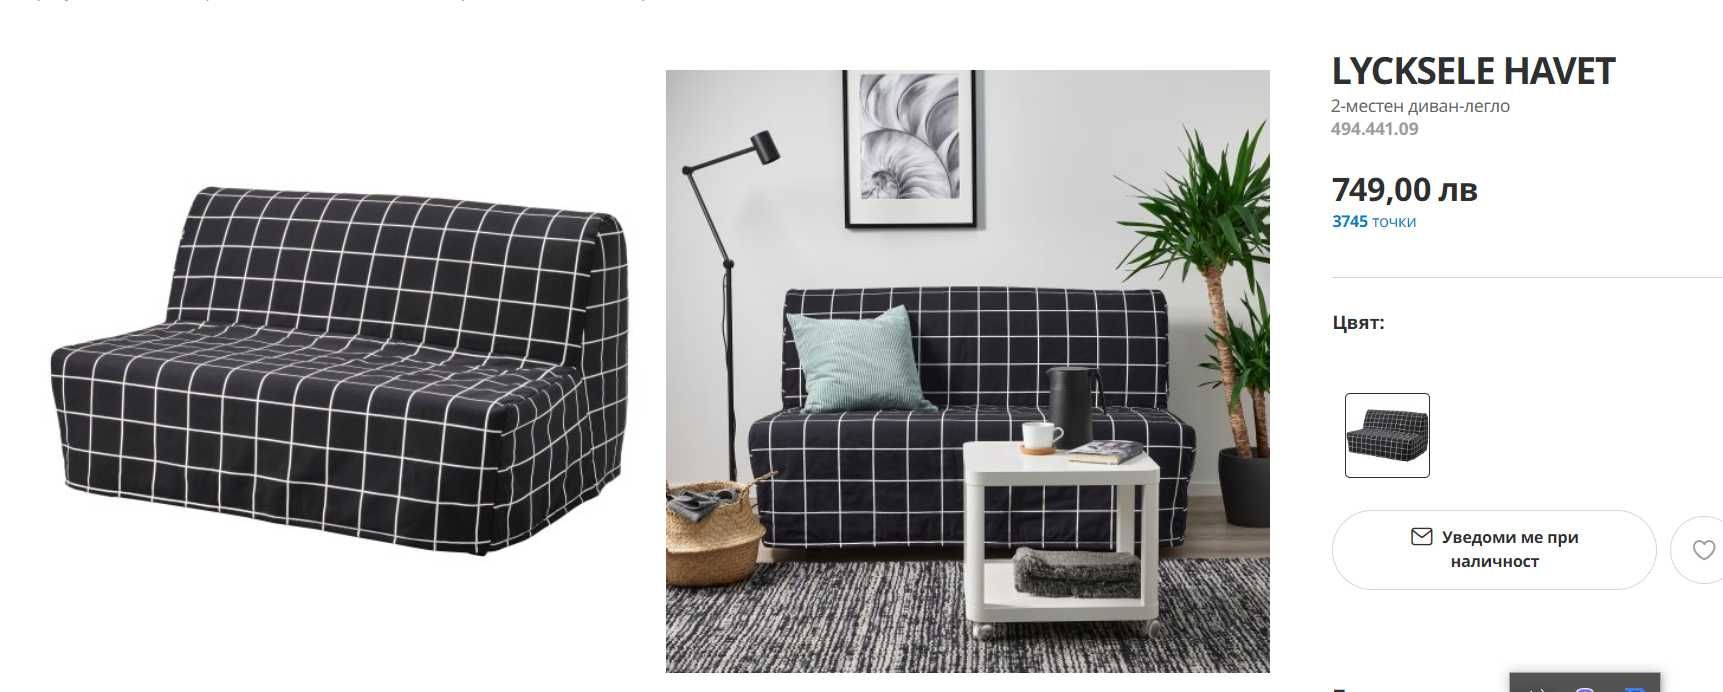 LYCKSELE HAVET(IKEA)
2- местен диван - легло